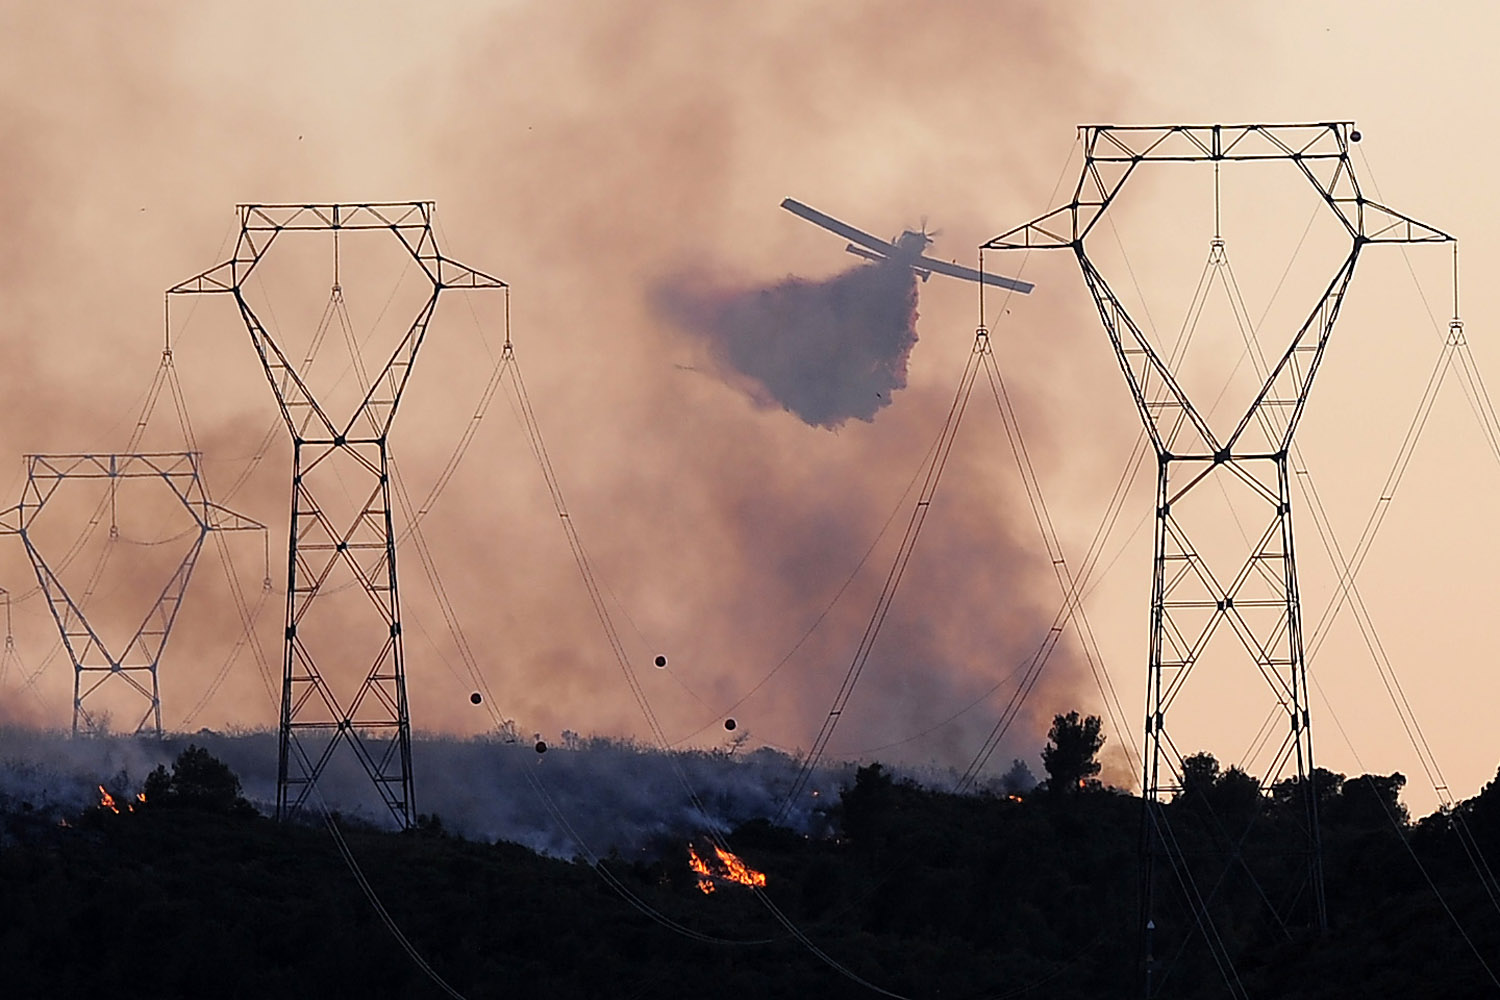 A helicopter drops water on a wild fire burning near the village of Vilanova i la Geltru.